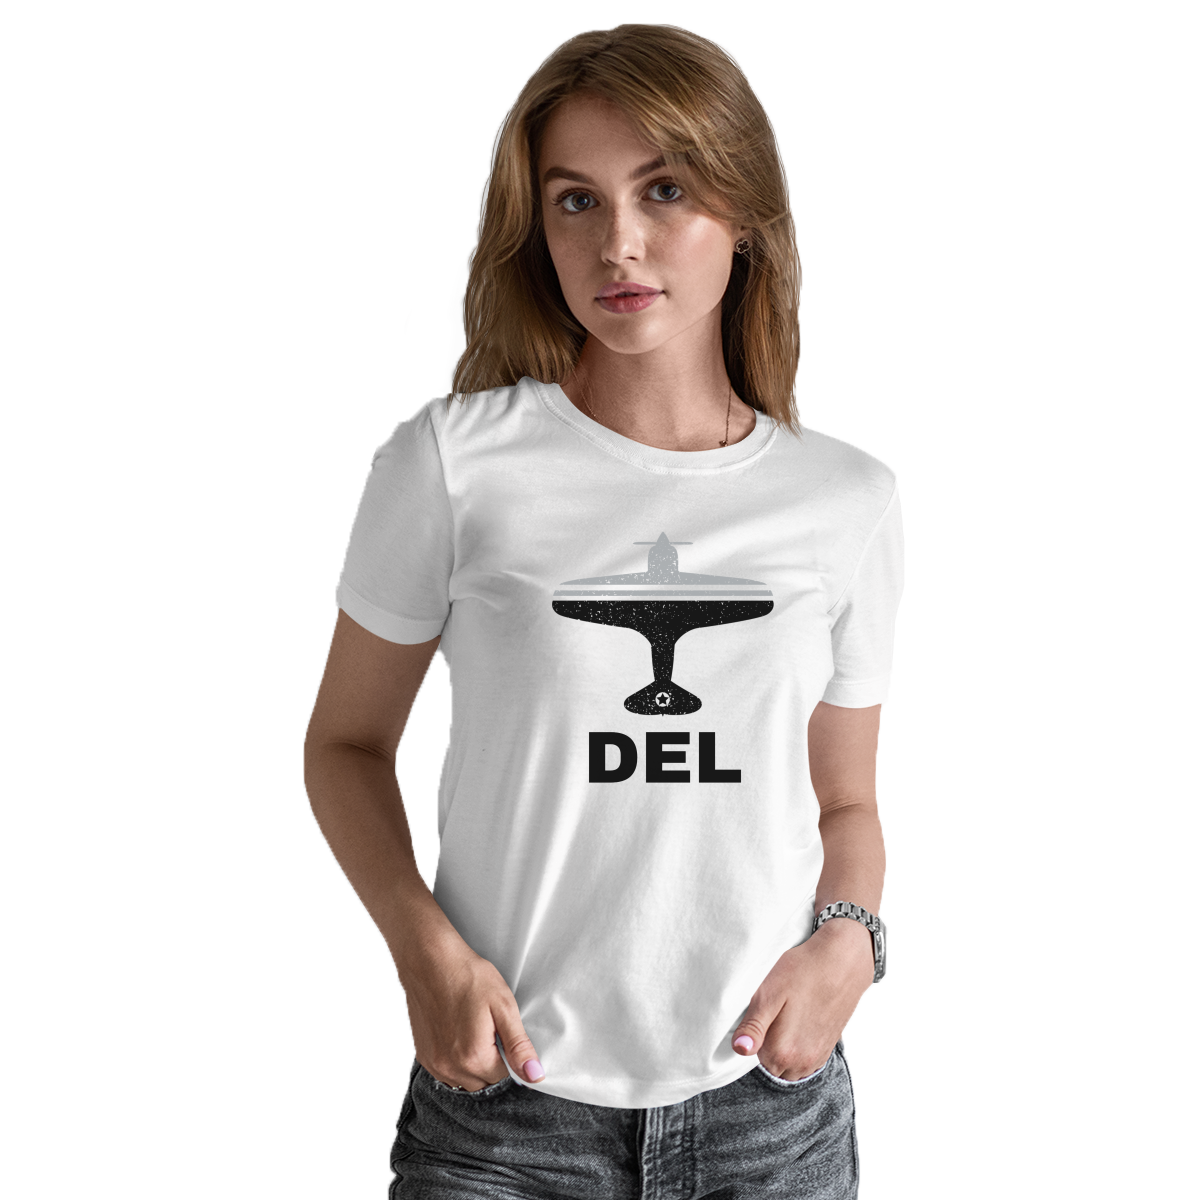 Fly Delhi DEL Airport Women's T-shirt | White